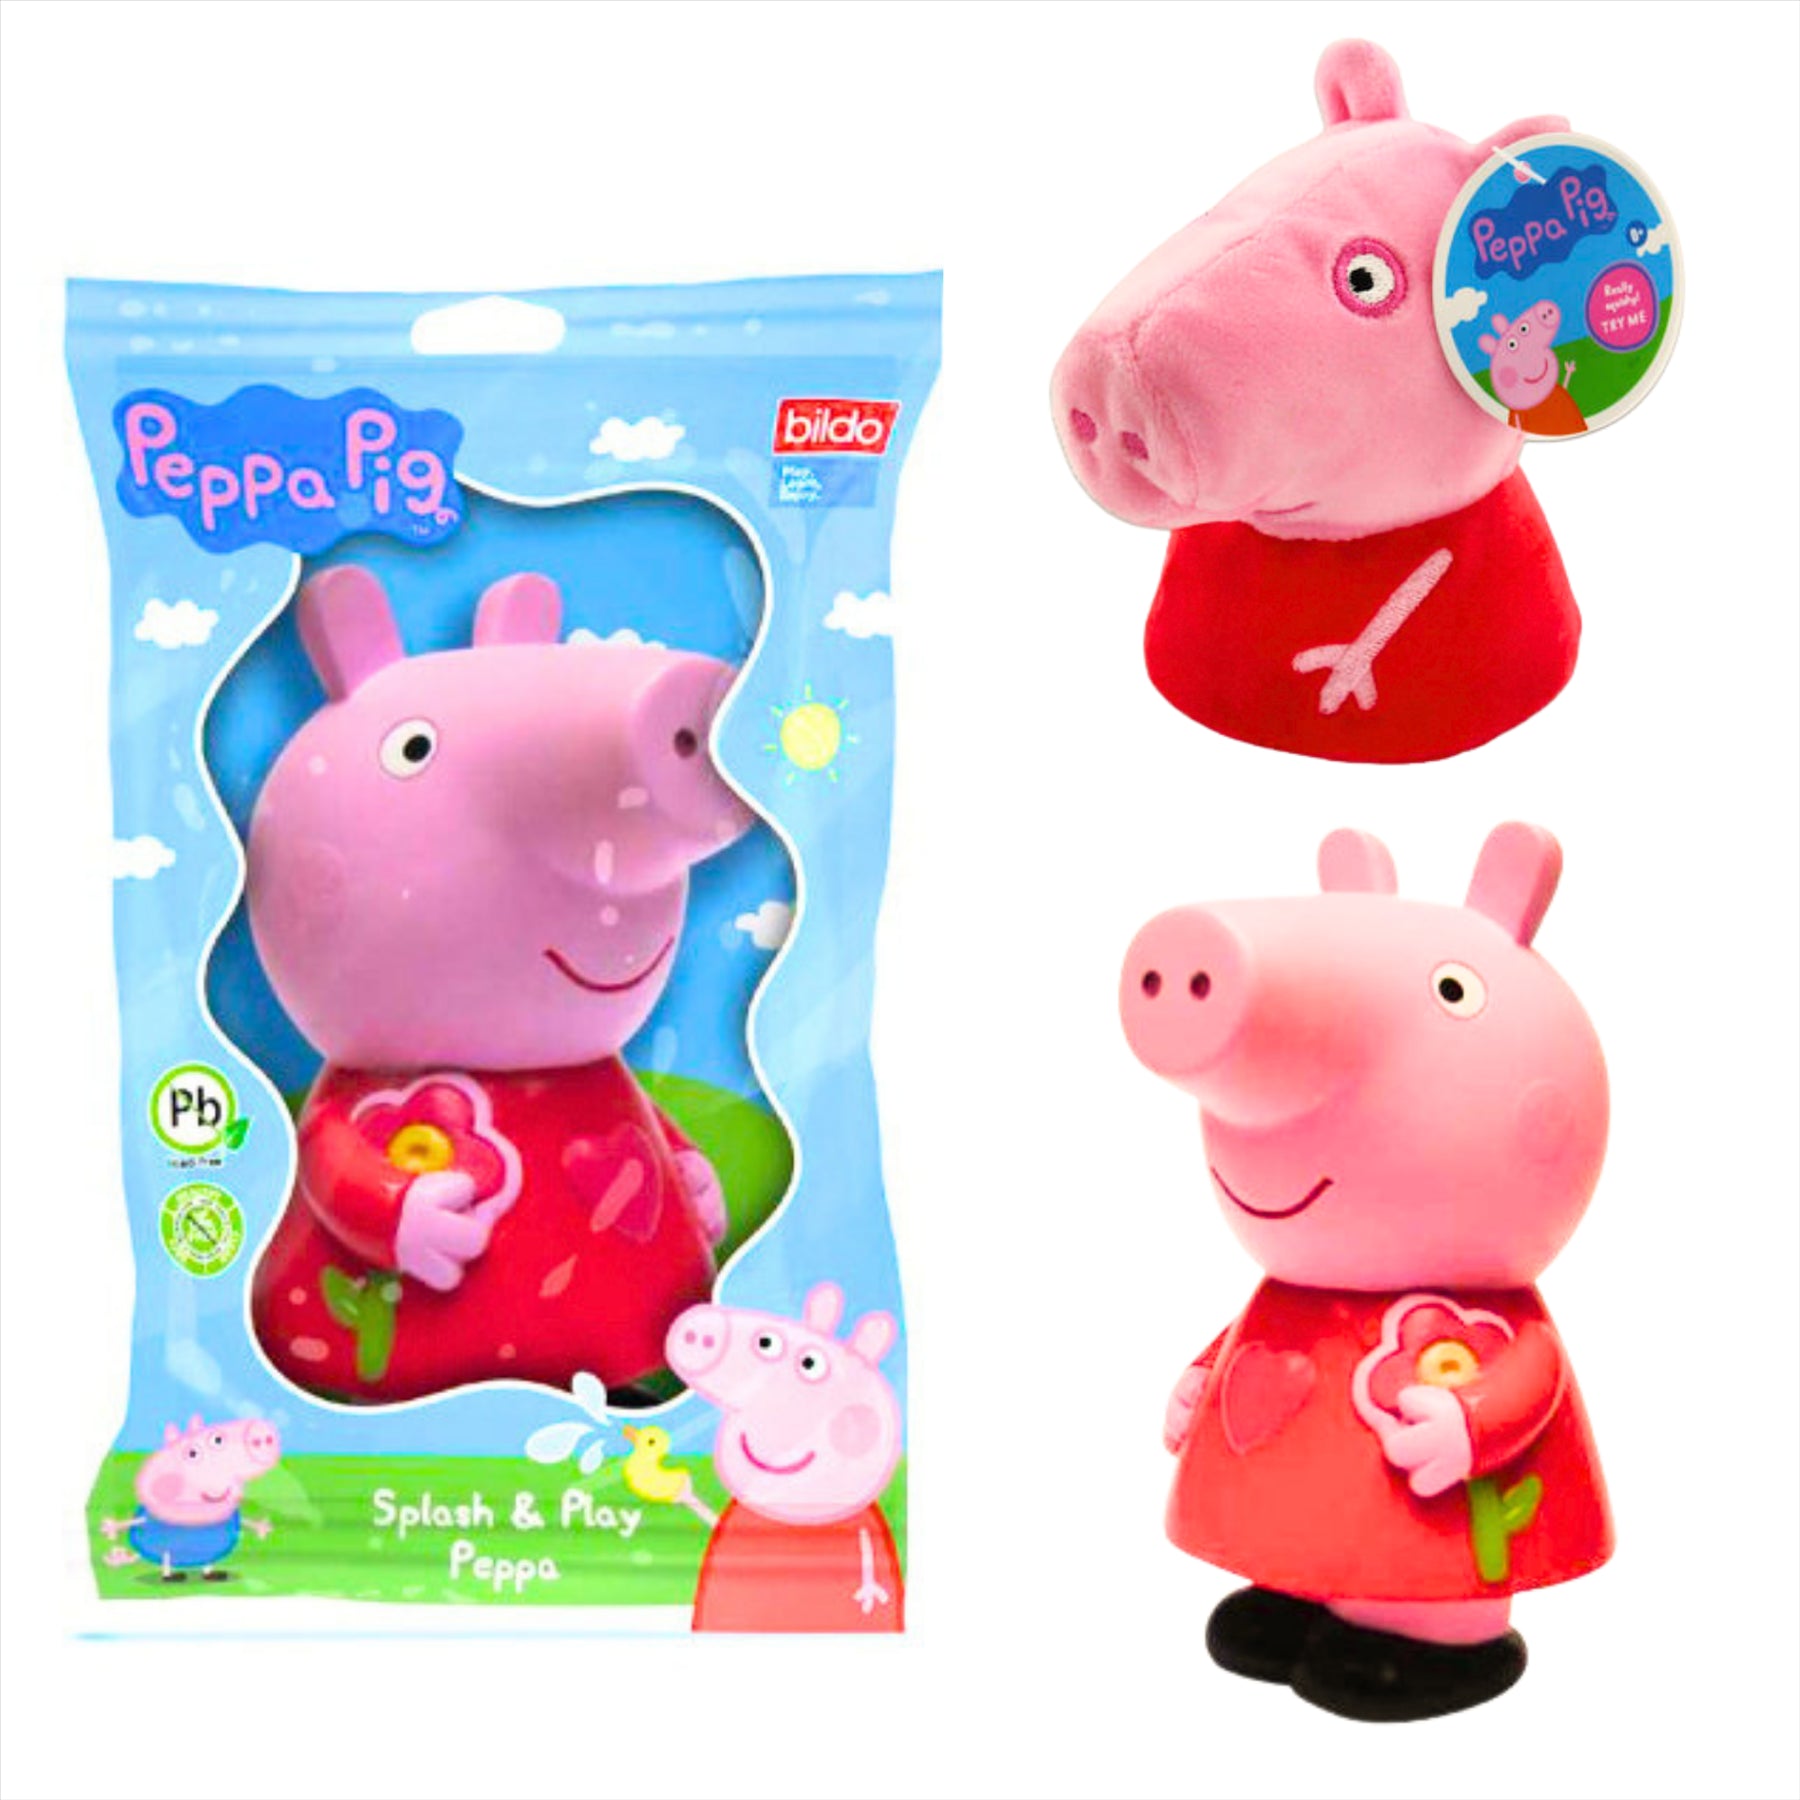 Peppa Pig - Super Soft Gift Quality Plush Gift Sets - 4" 10cm Squishy Peppa & 5" 12cm Splash n Play Peppa - Toptoys2u